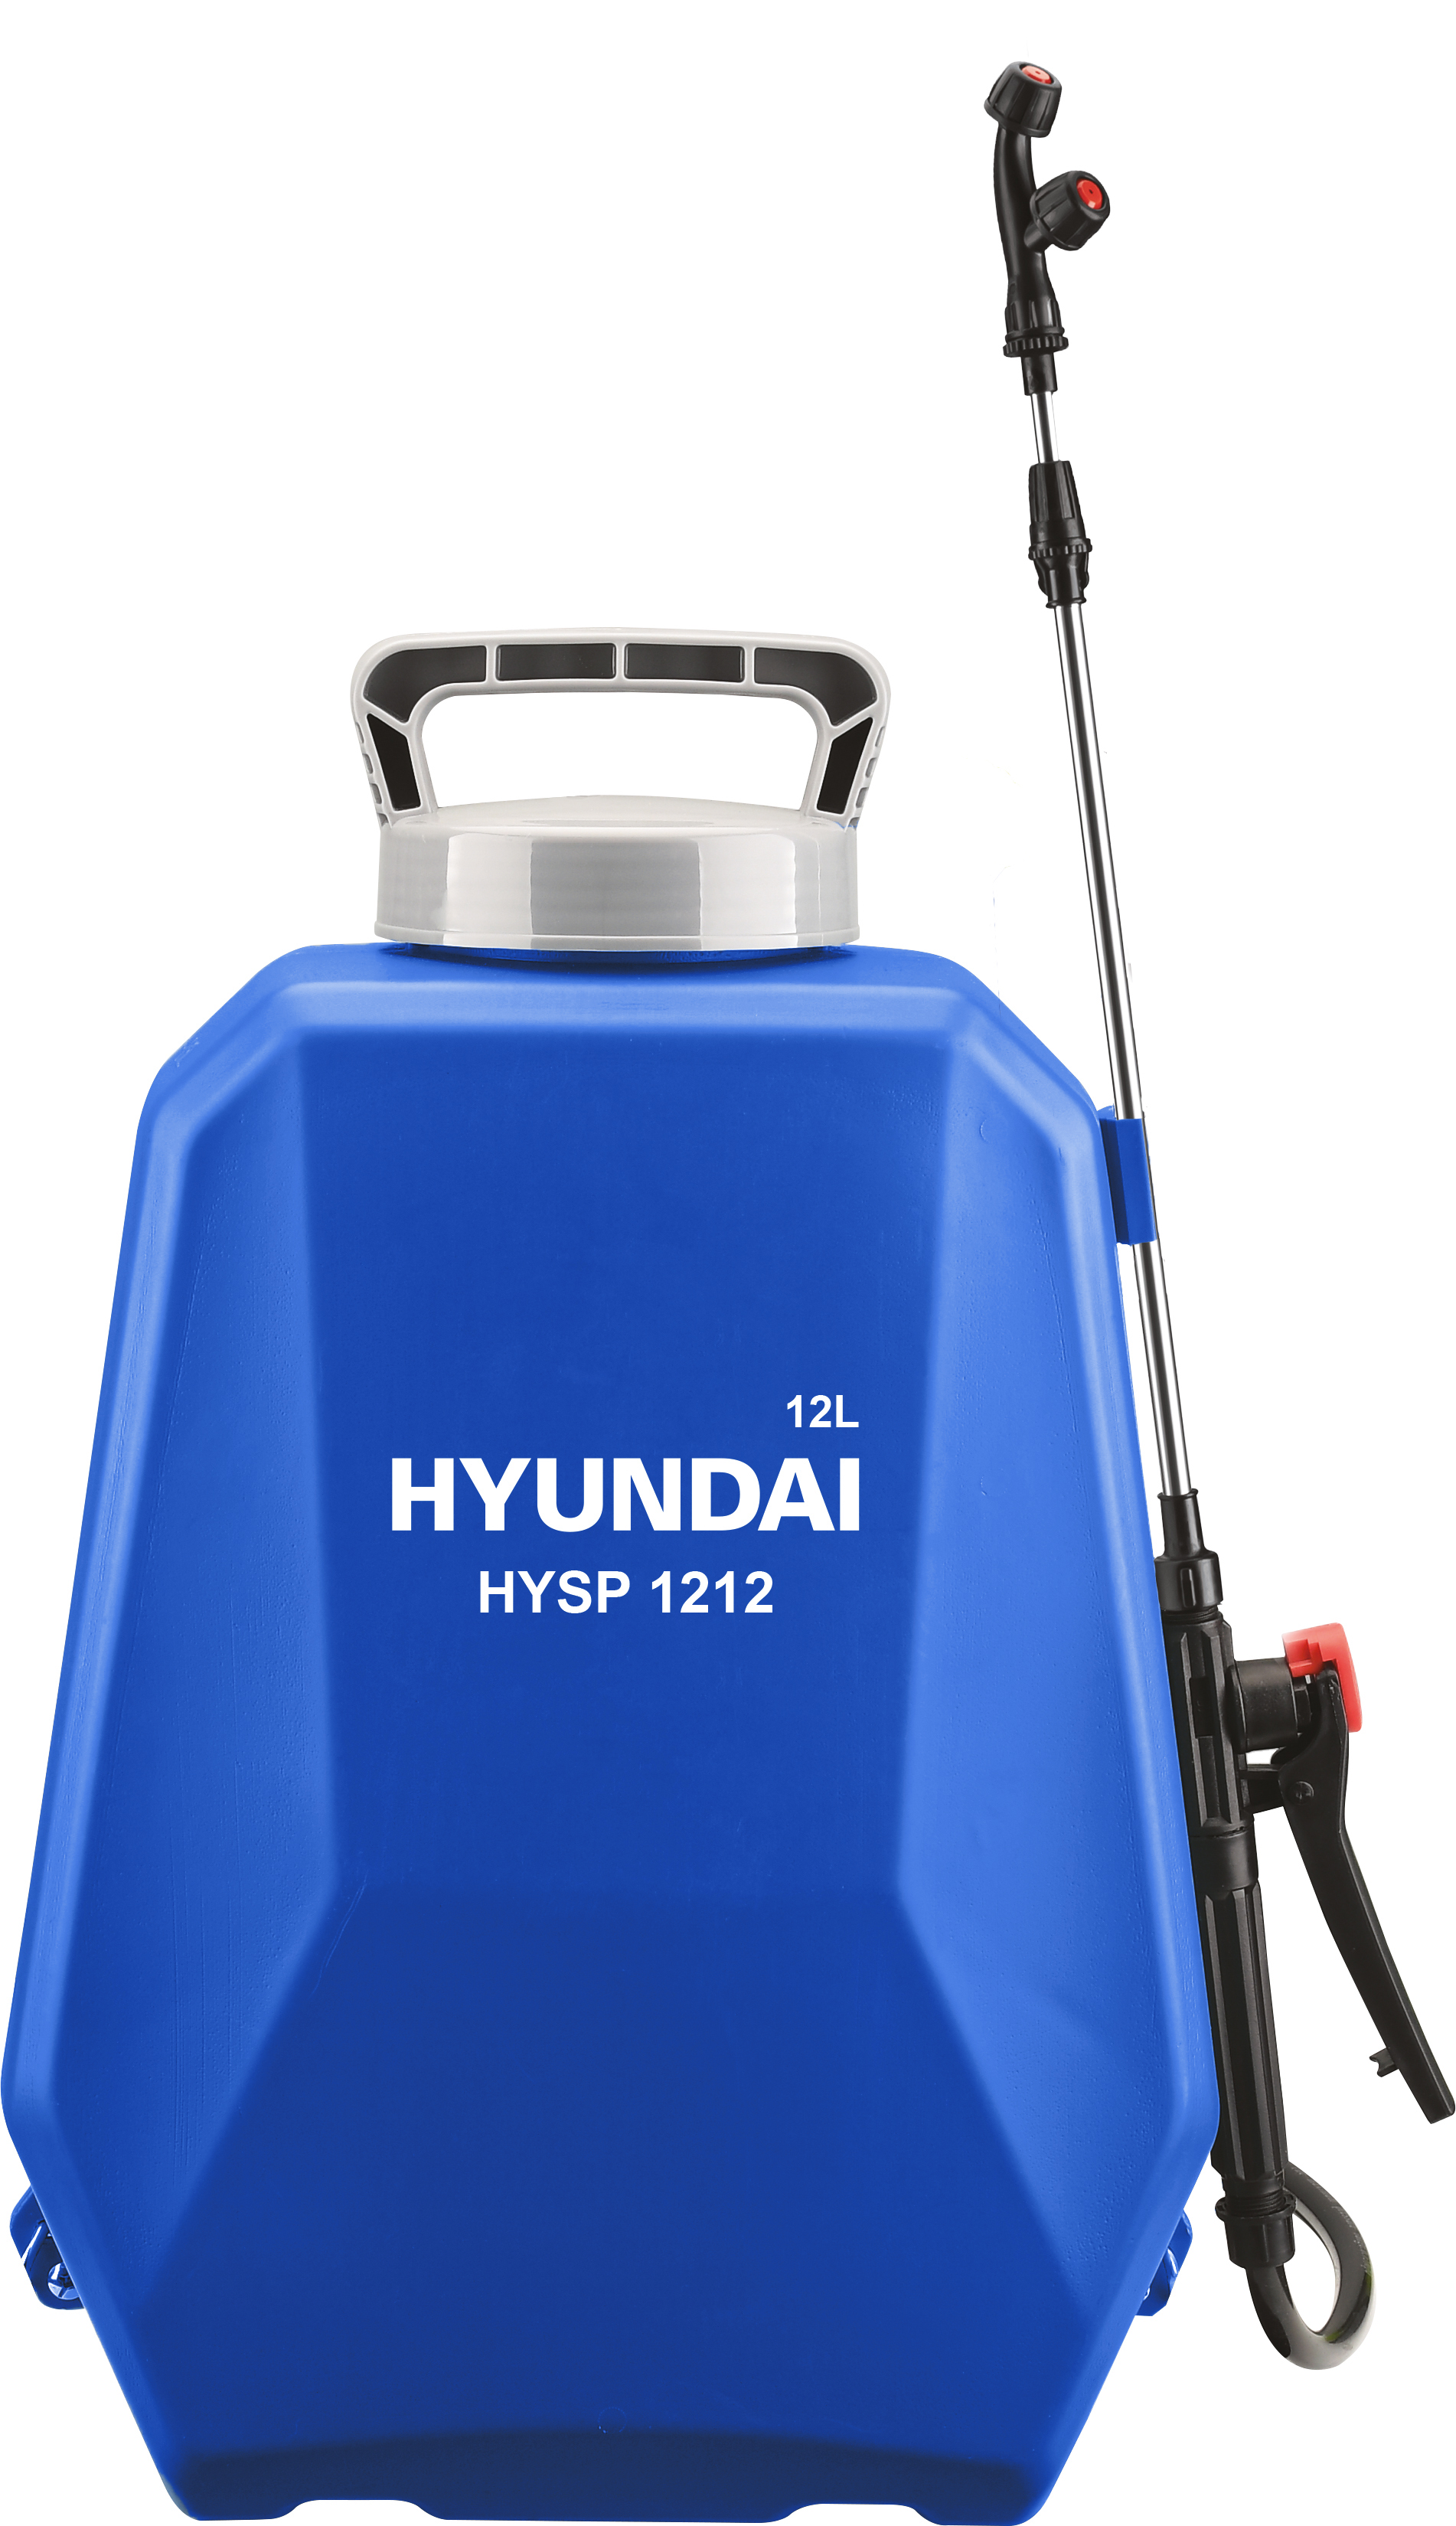 Аккумуляторный опрыскиватель Hyundai HYSP 1212 аккумуляторный опрыскиватель hyundai hysp 1212